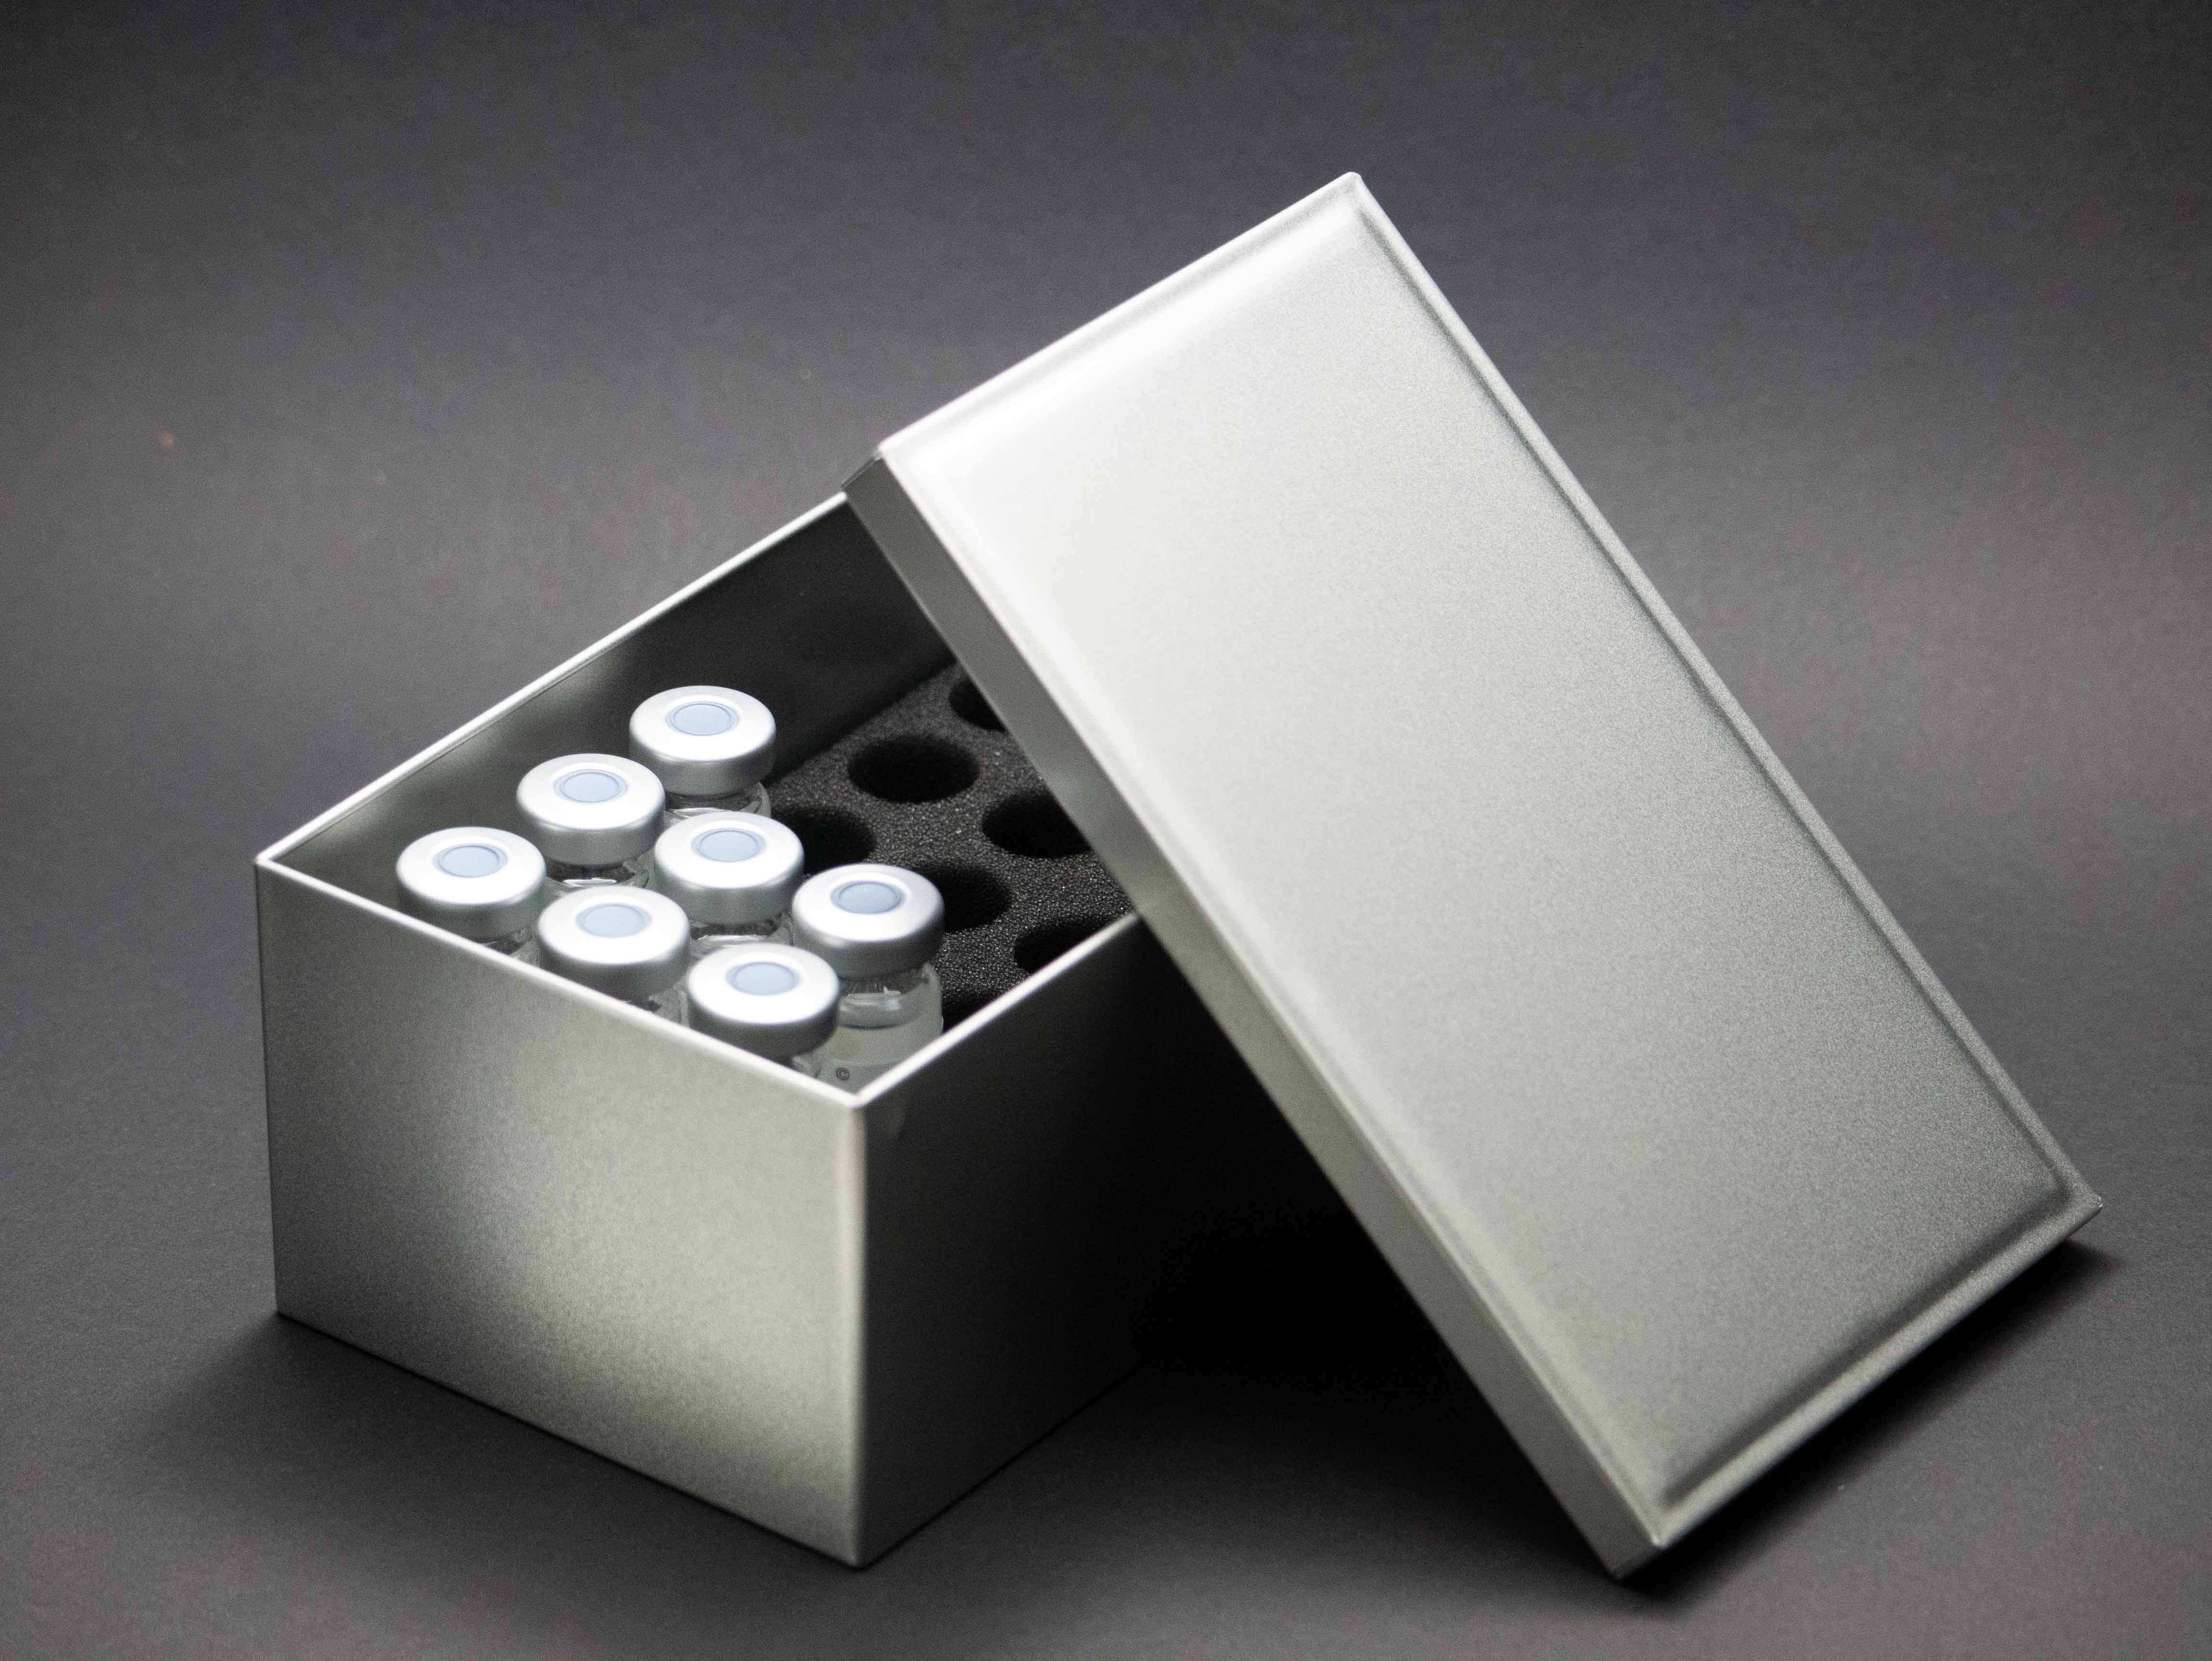 Aluminum box with foam inlays